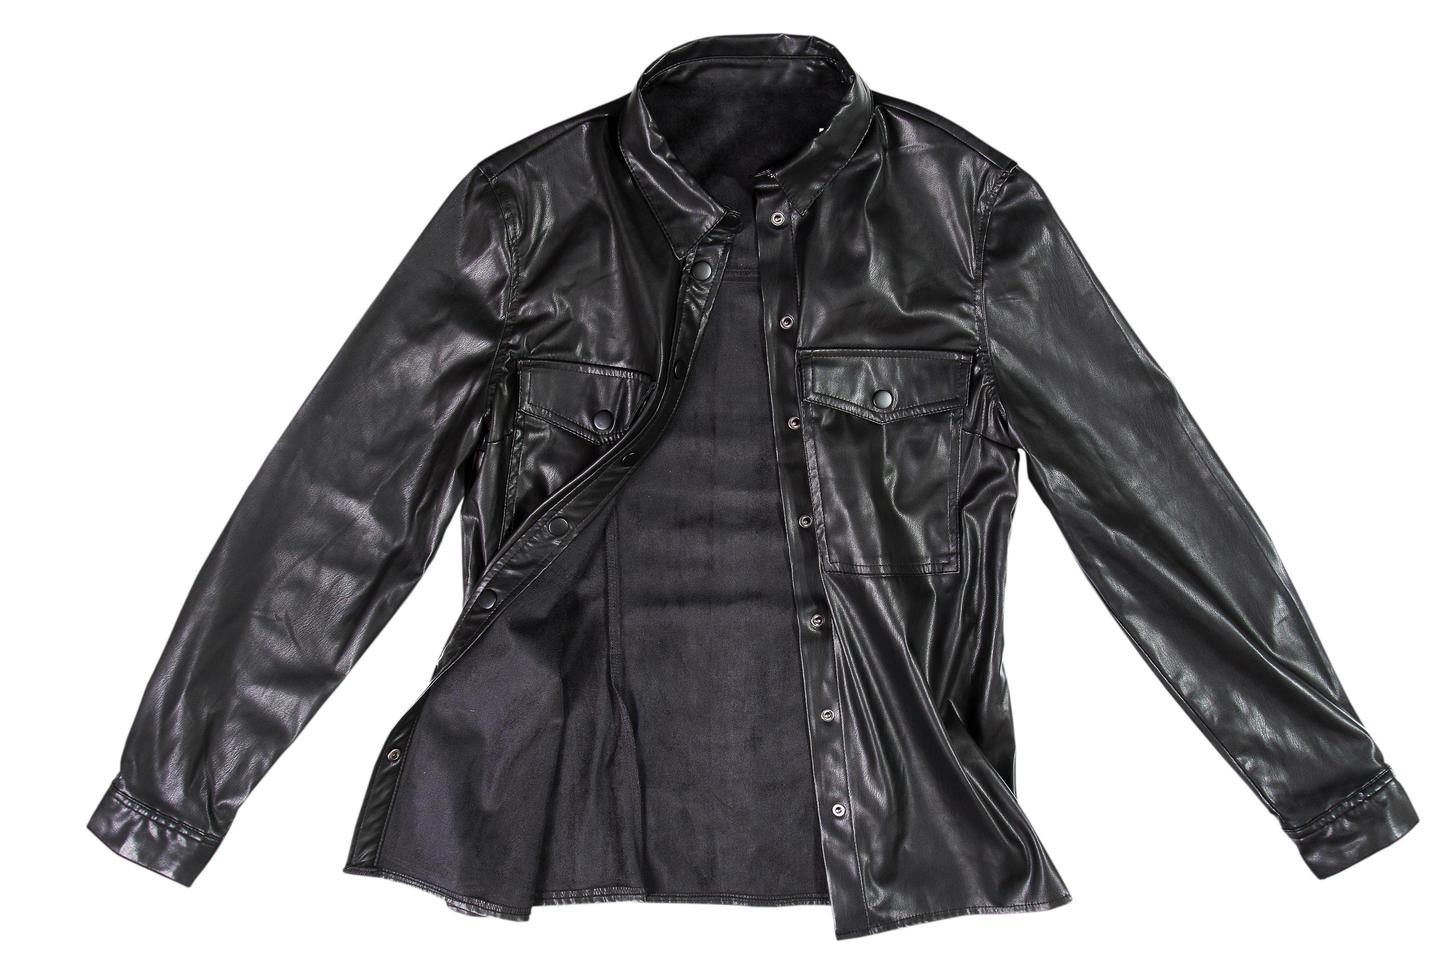 Black leather jacket isolated on white background. Classic modern leather jacket photo